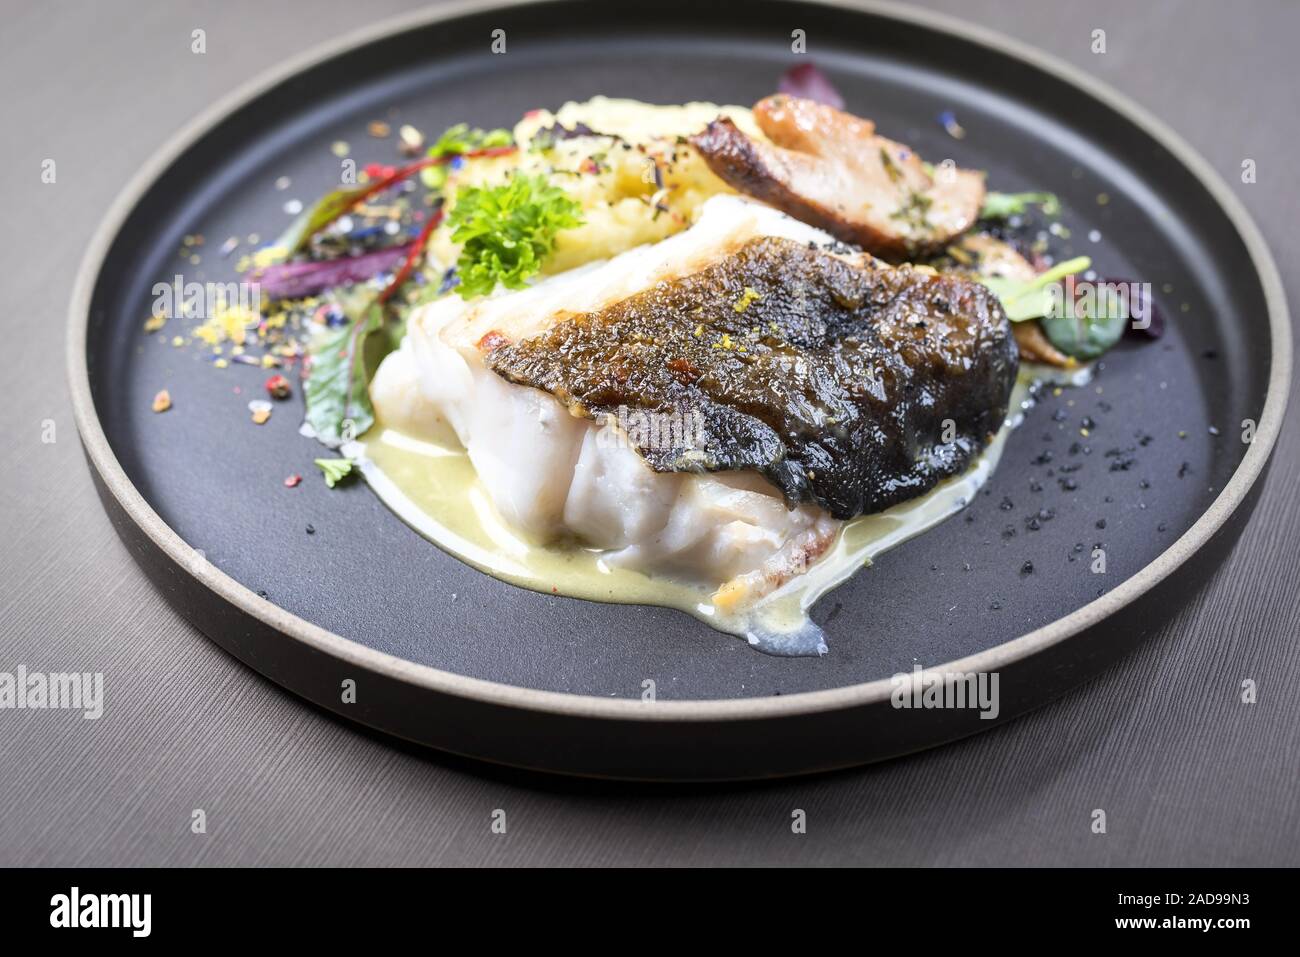 Poêlée de cabillaud skrei norvégien un filet de poisson avec de la purée de  pommes de terre Photo Stock - Alamy